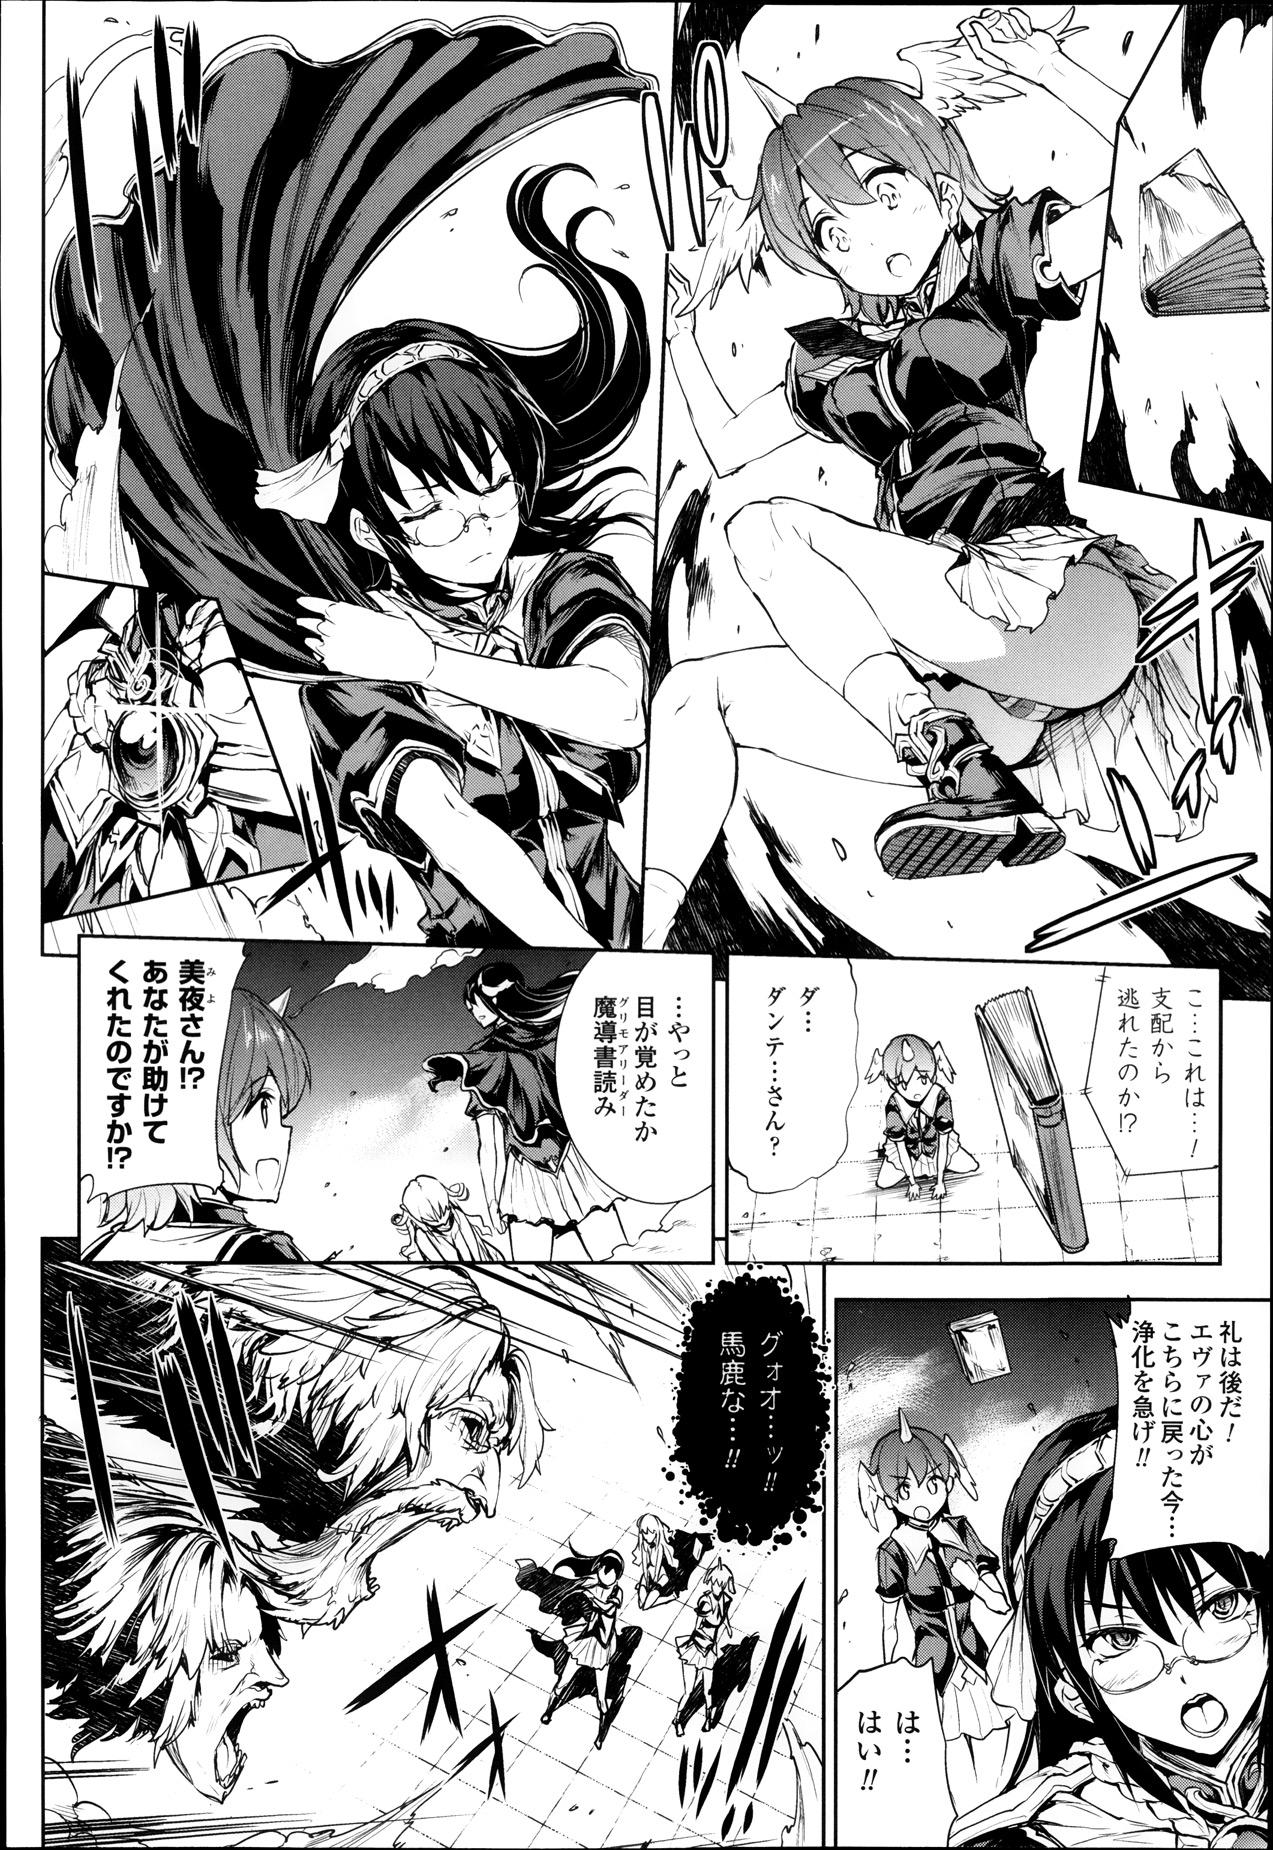 [Erect Sawaru] Shinkyoku no Grimoire -PANDRA saga 2nd story- Ch 07-9.5 79